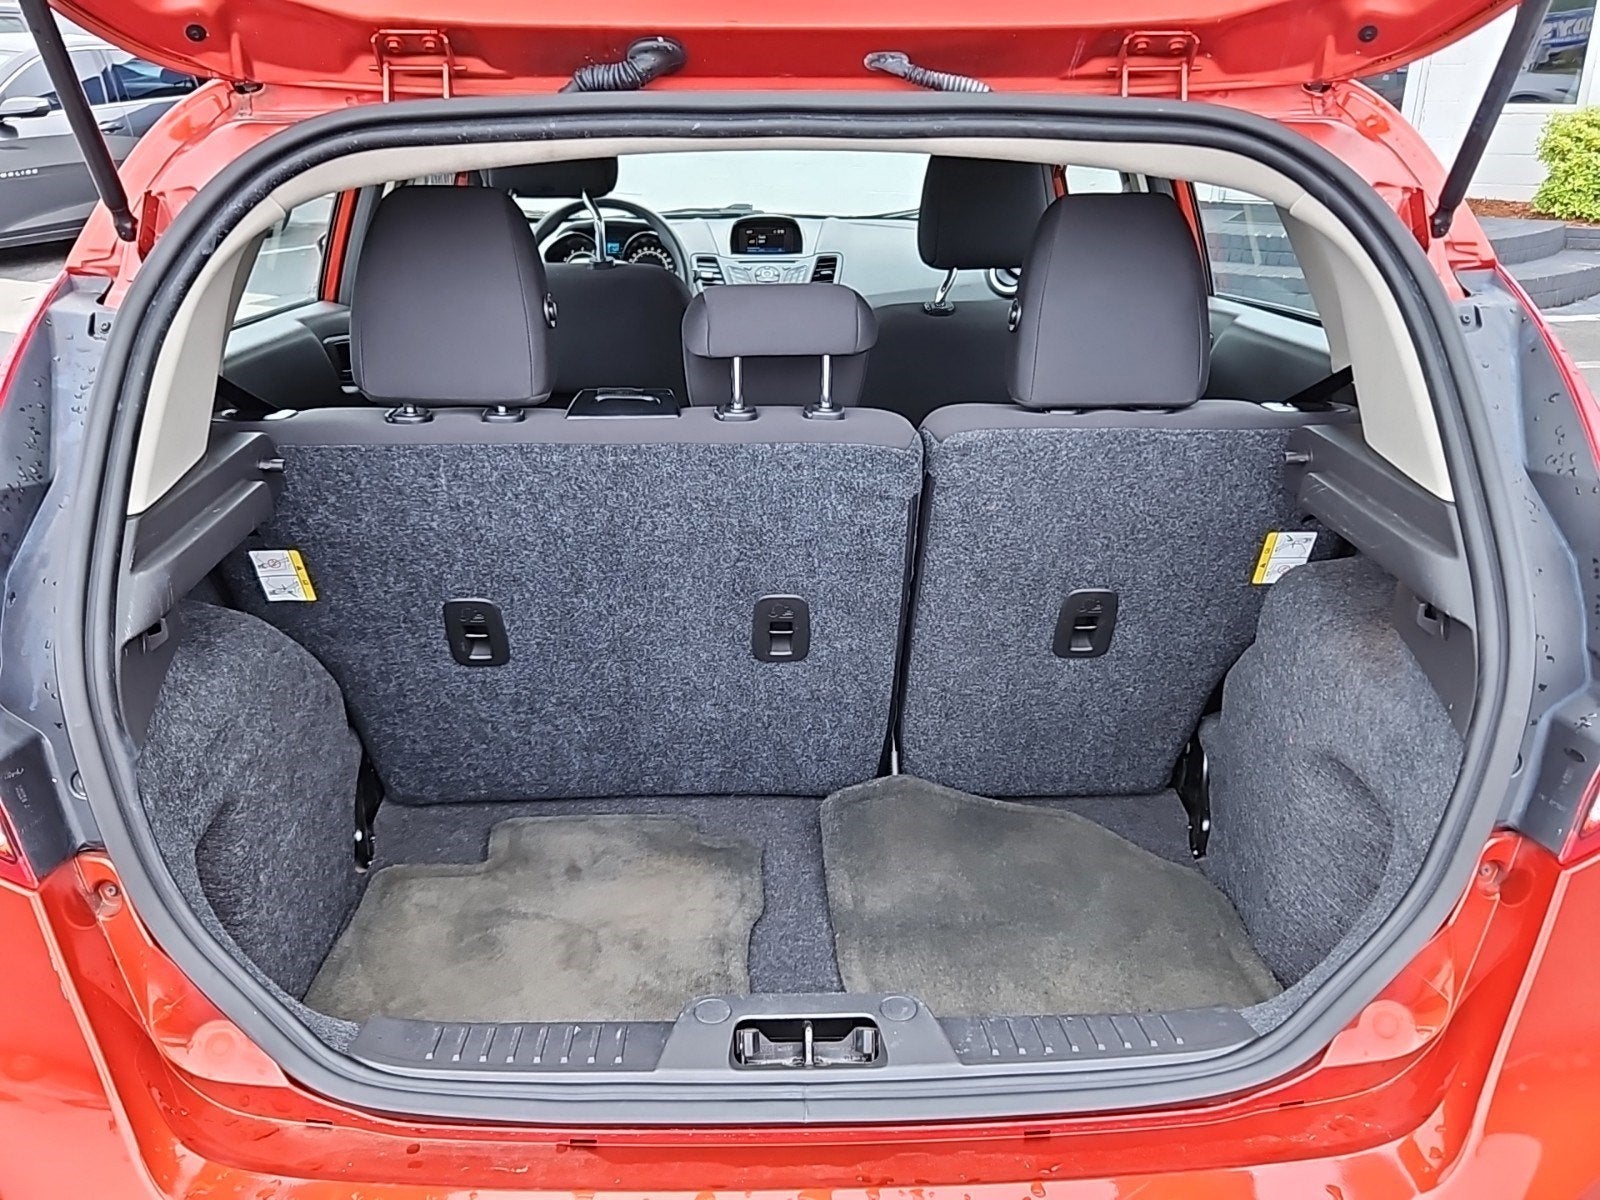 2018 Ford Fiesta SE Hatchback